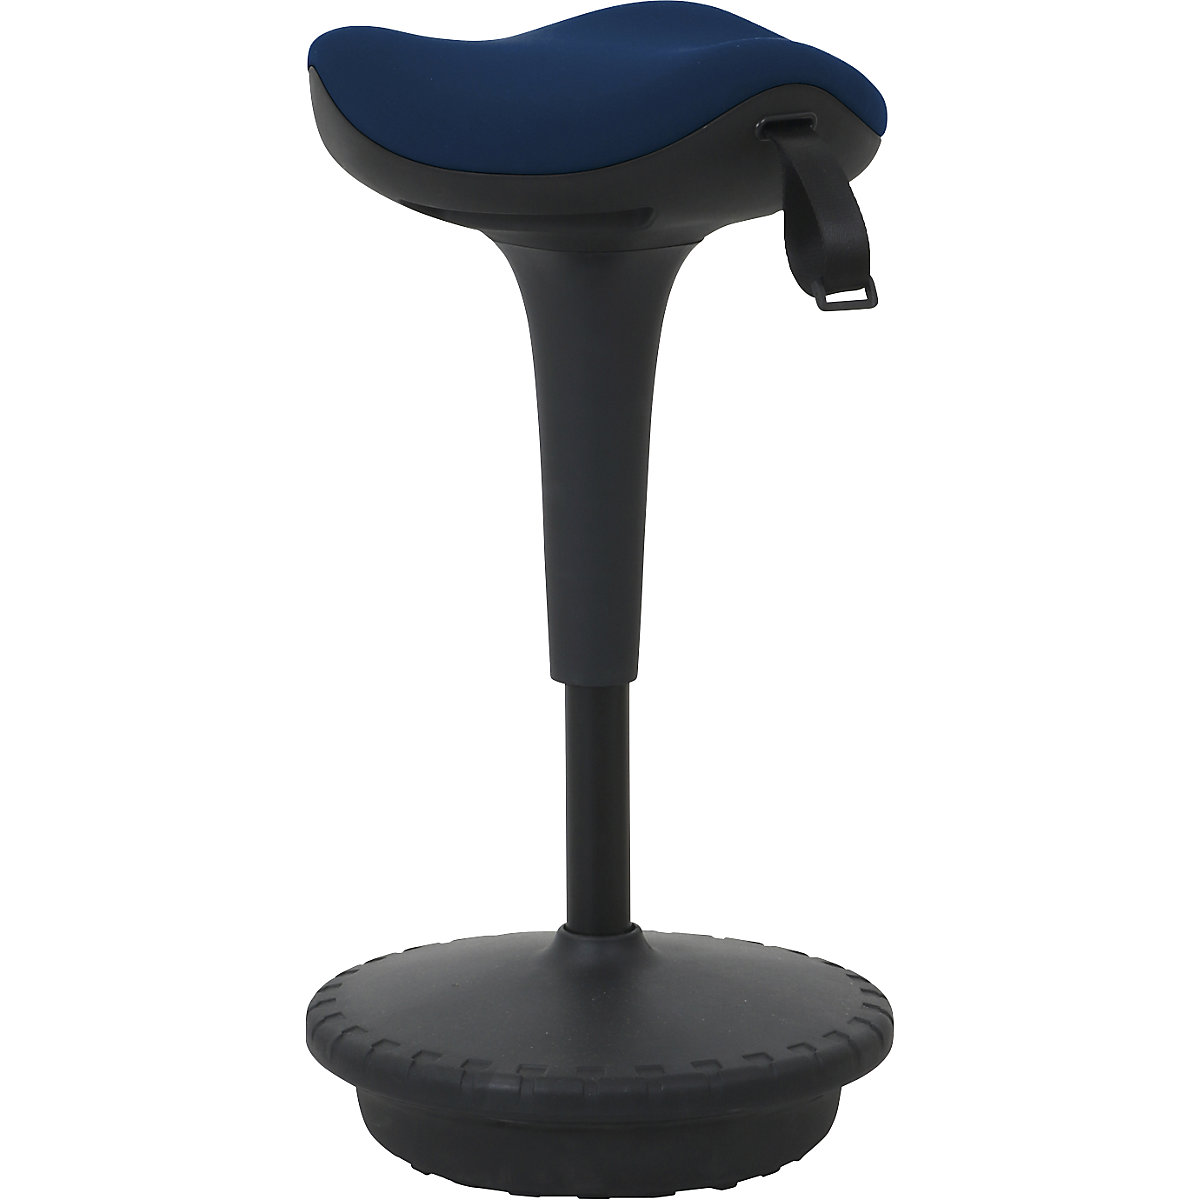 Apoio de pé 6156 – Twinco, assento triangular 325 mm, forro azul-5